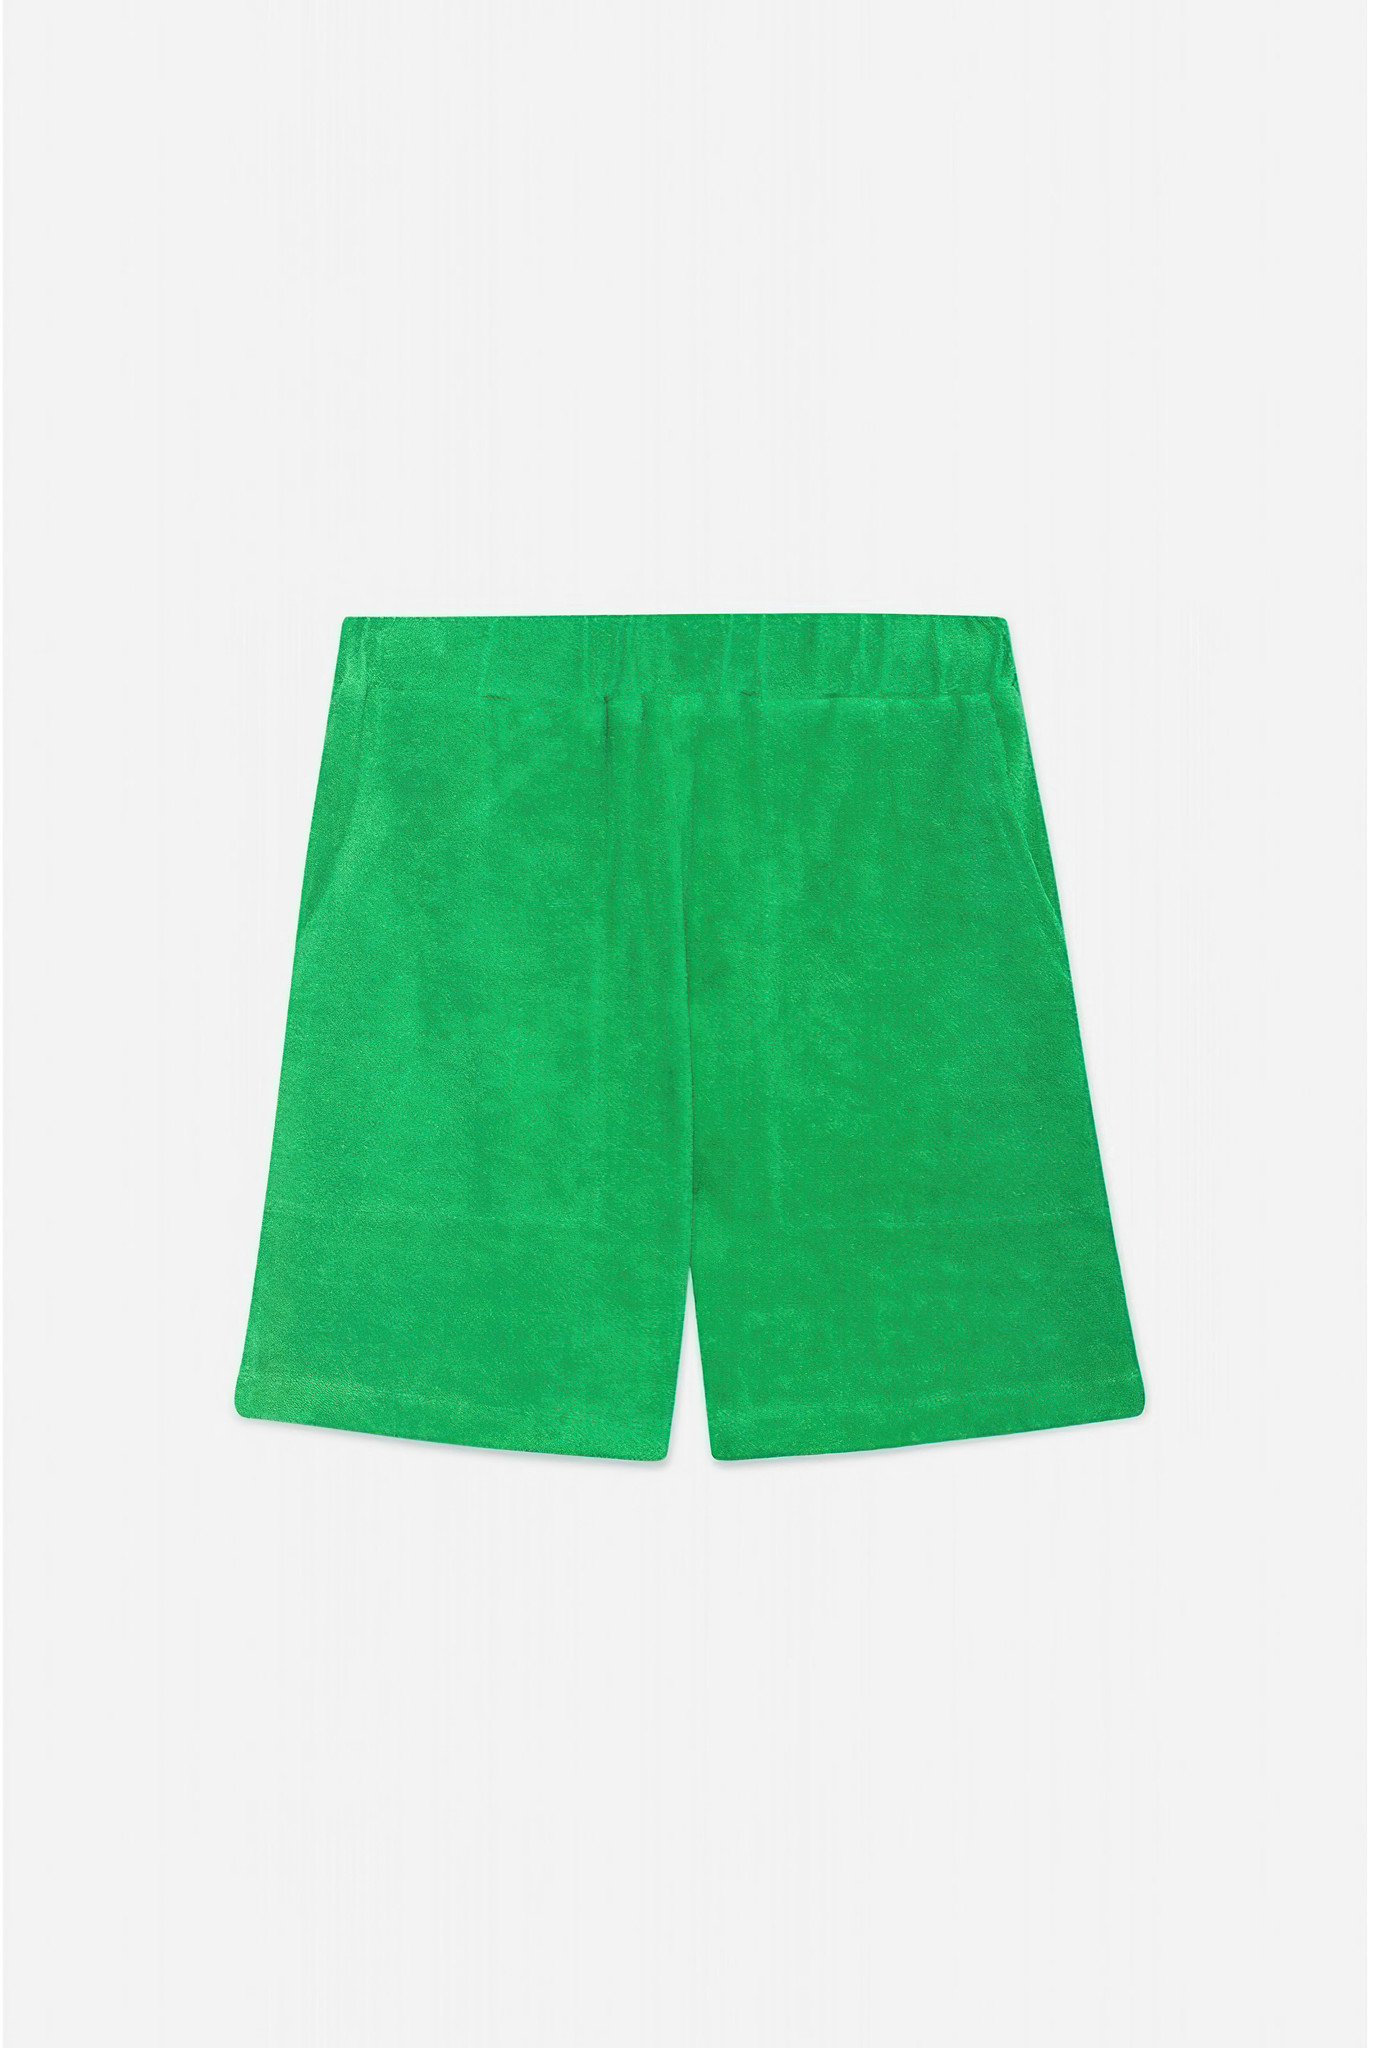 Strut Yo Fluff Green Shorts-5